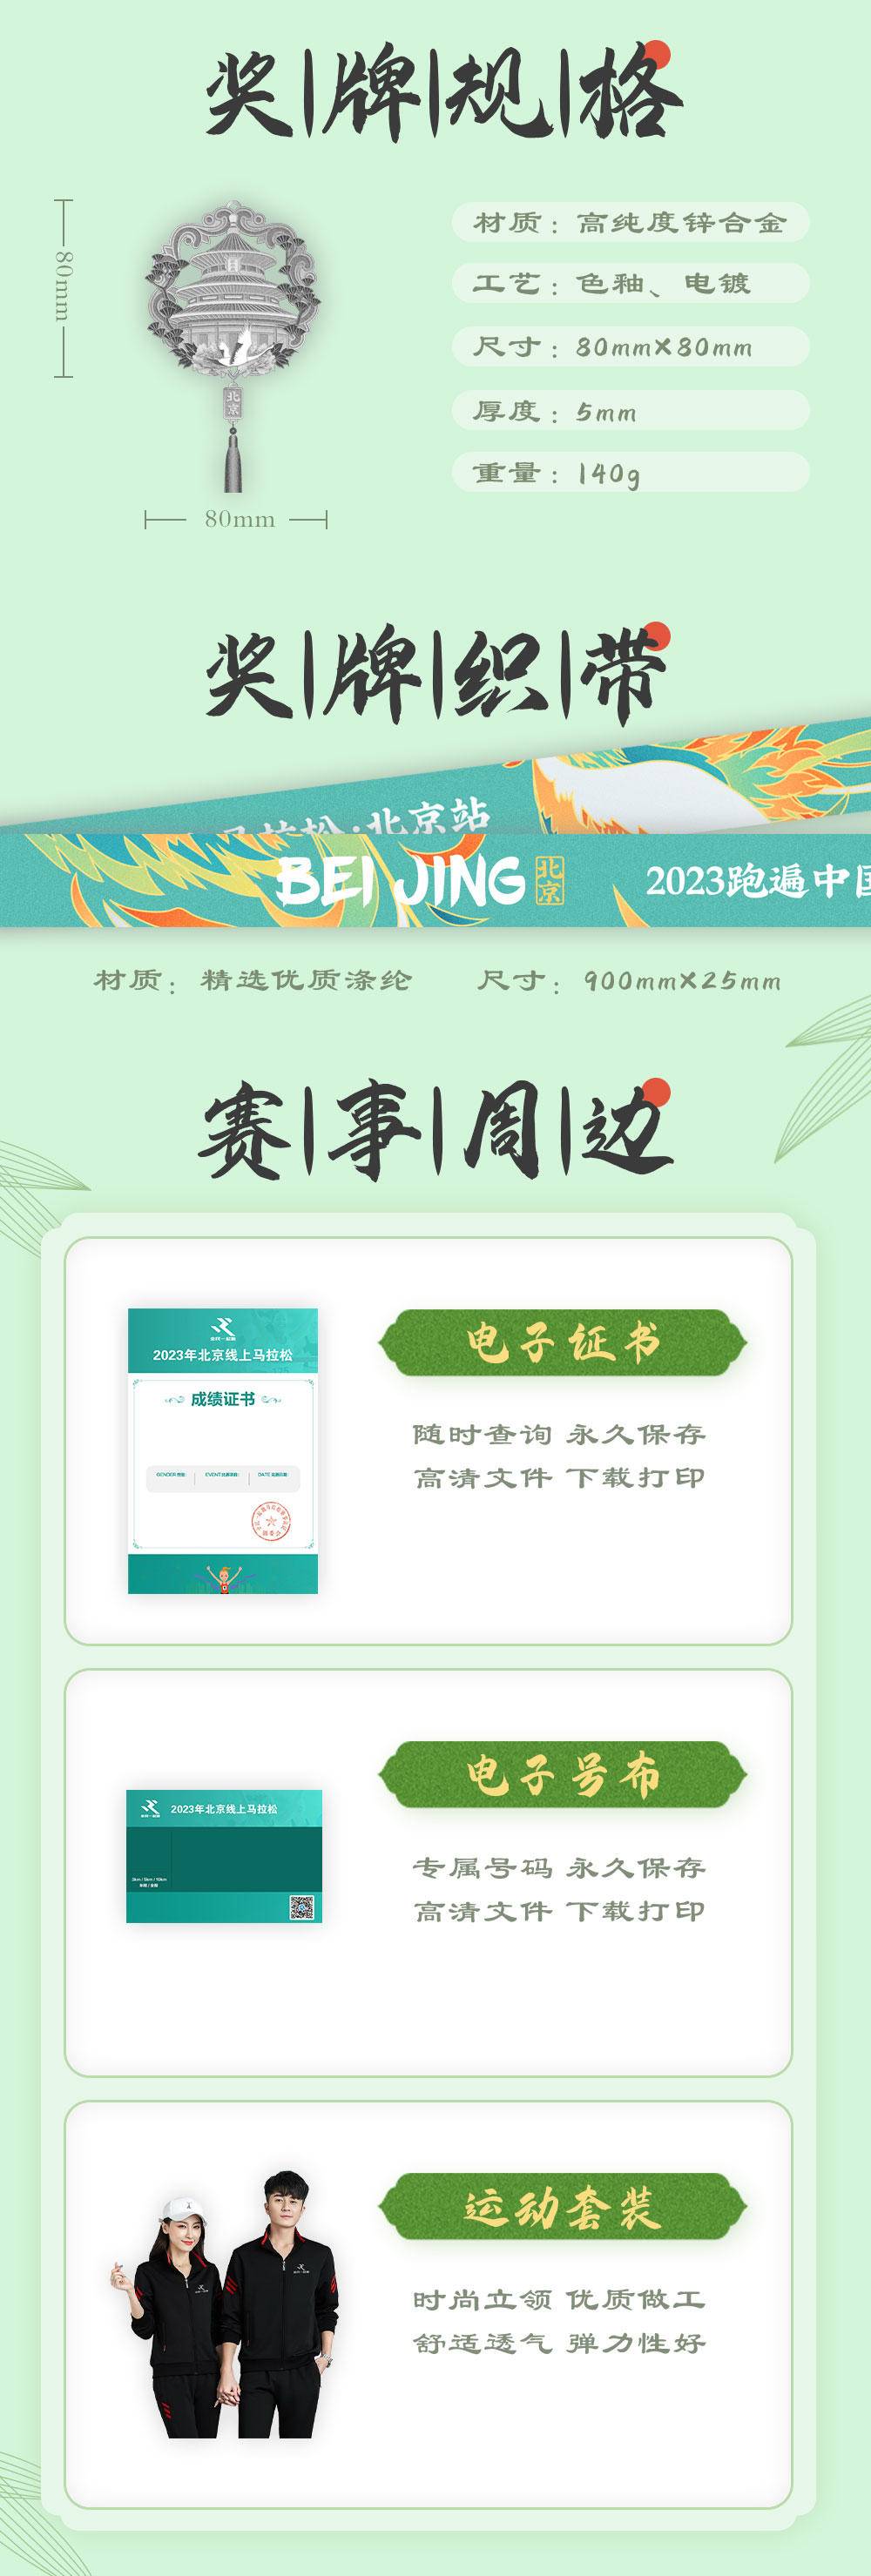 比赛上传截止11月13日|2023跑遍中国线上马拉松-北京站11月2日开始(图7)